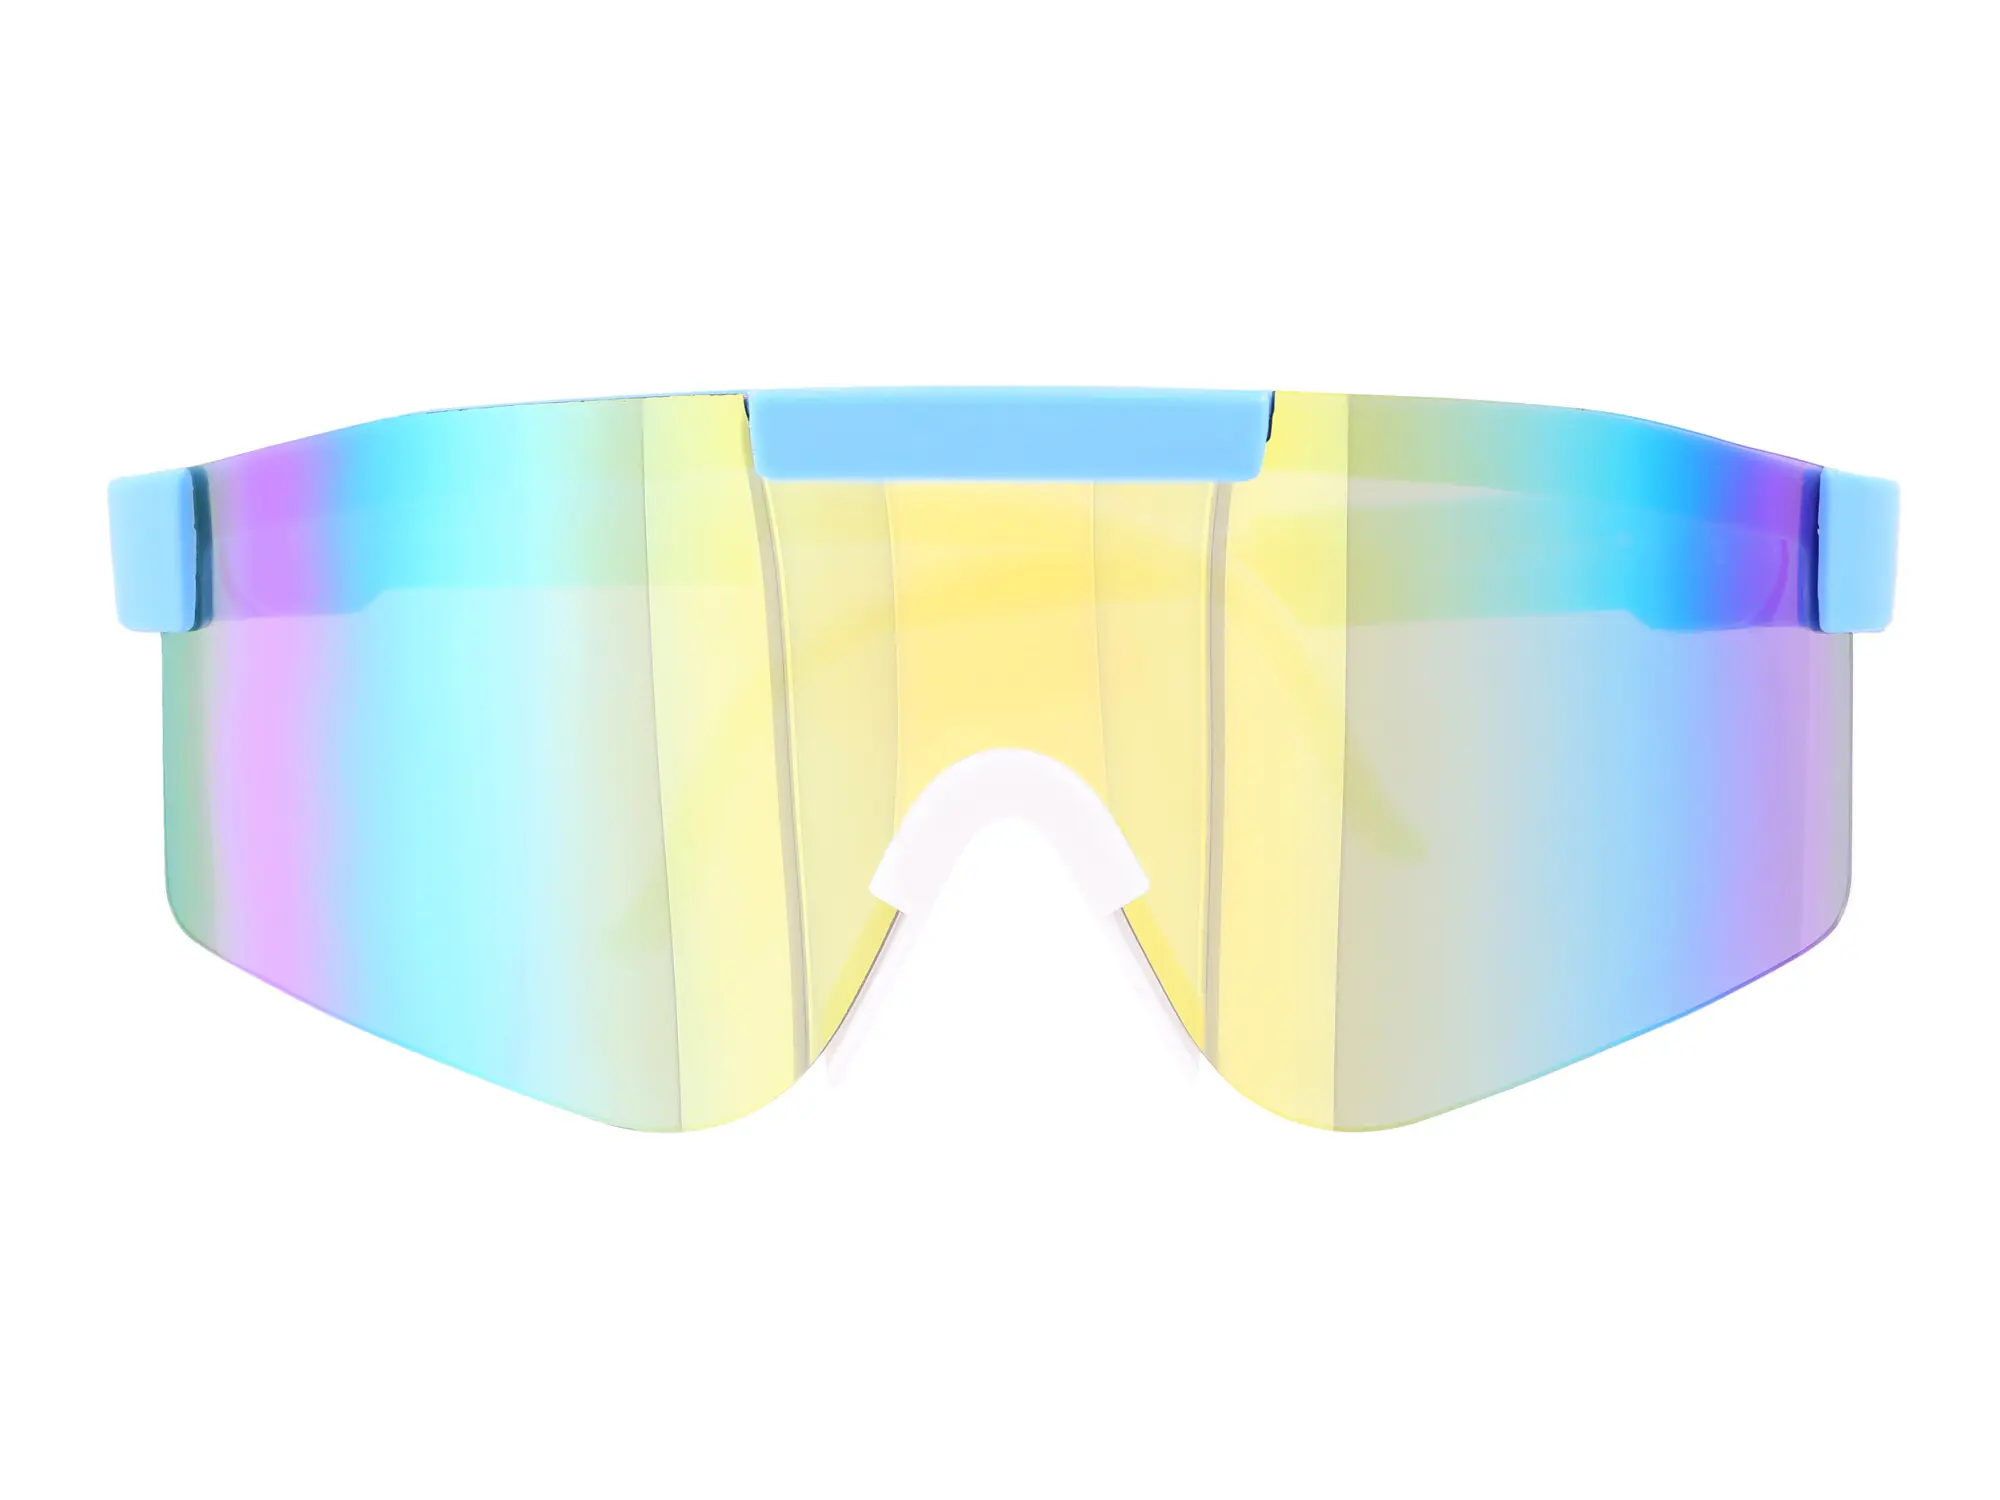 Sonnenbrille "extra Schnell" - Gelb / Blau verspiegelt, Item no: 10077893 - Image 1